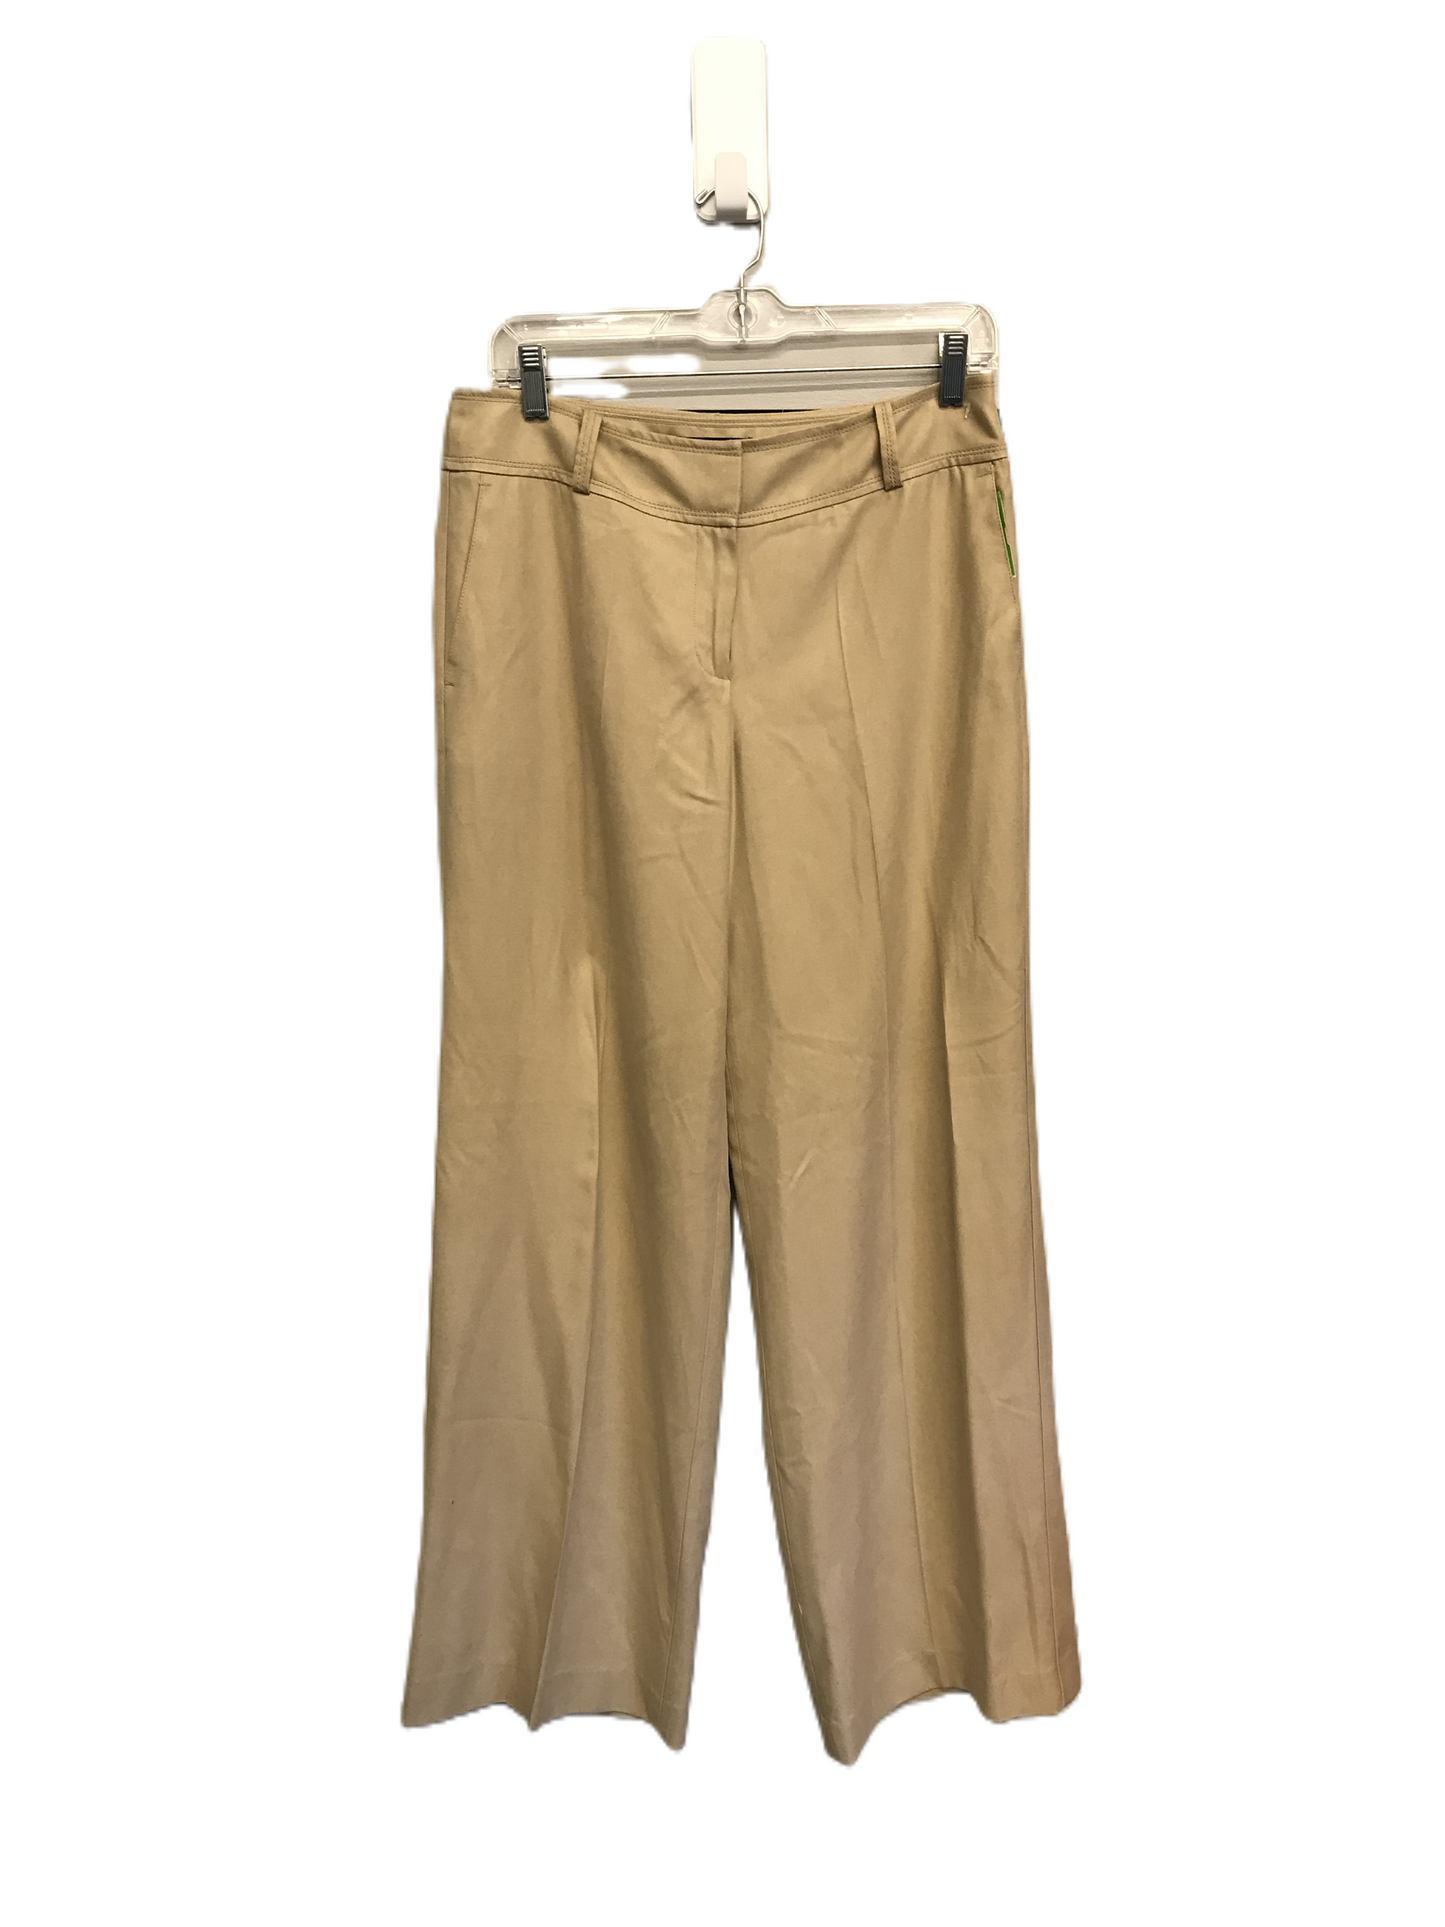 Tan Pants Dress By Talbots, Size: 8